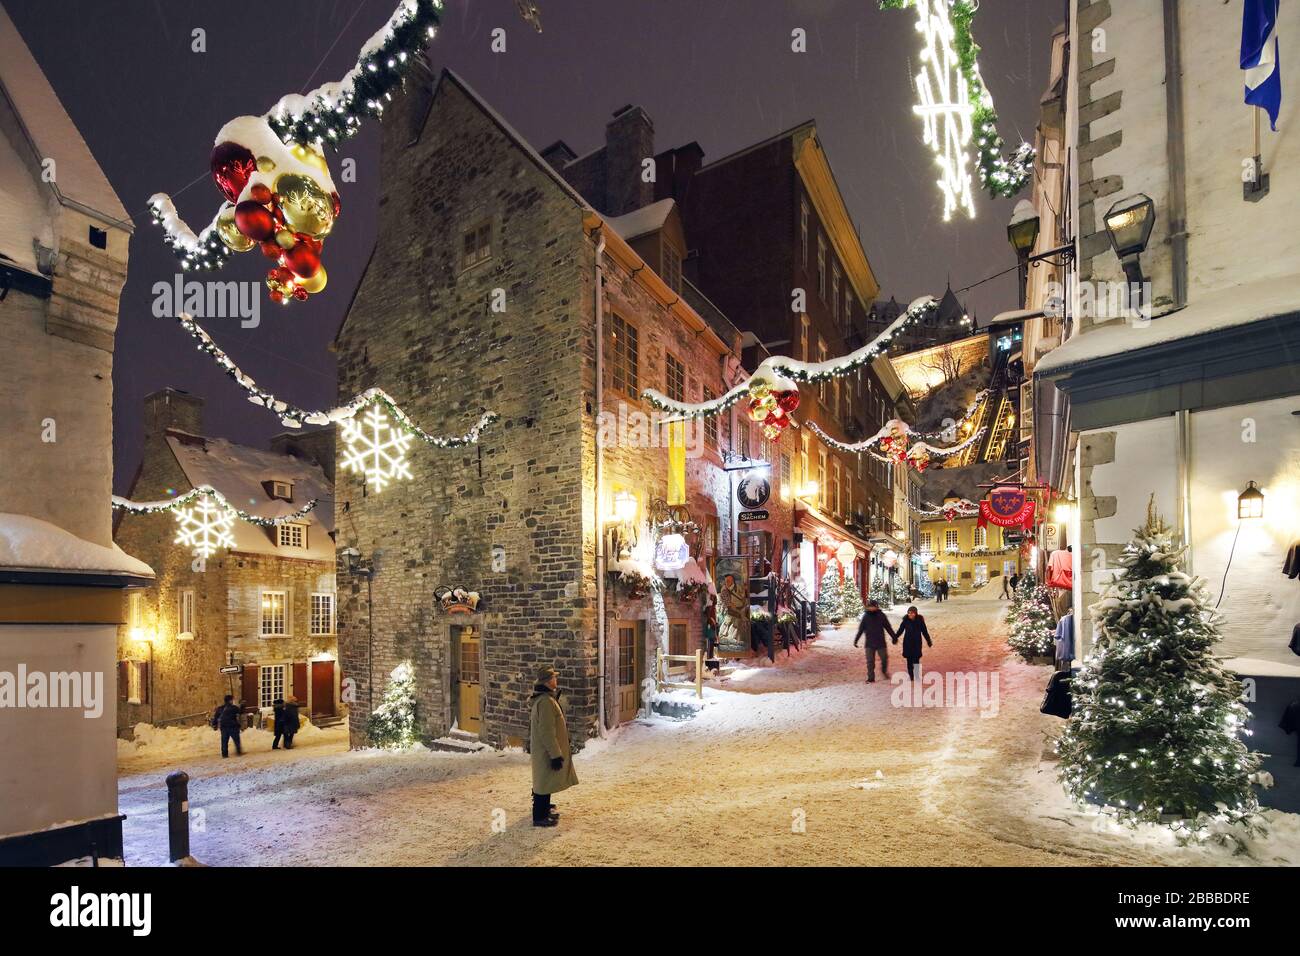 Scène nocturne de la rue sous le fort pendant la période de Noël. La Basse-ville de la vieille ville de Québec, Québec, Québec, Canada Banque D'Images